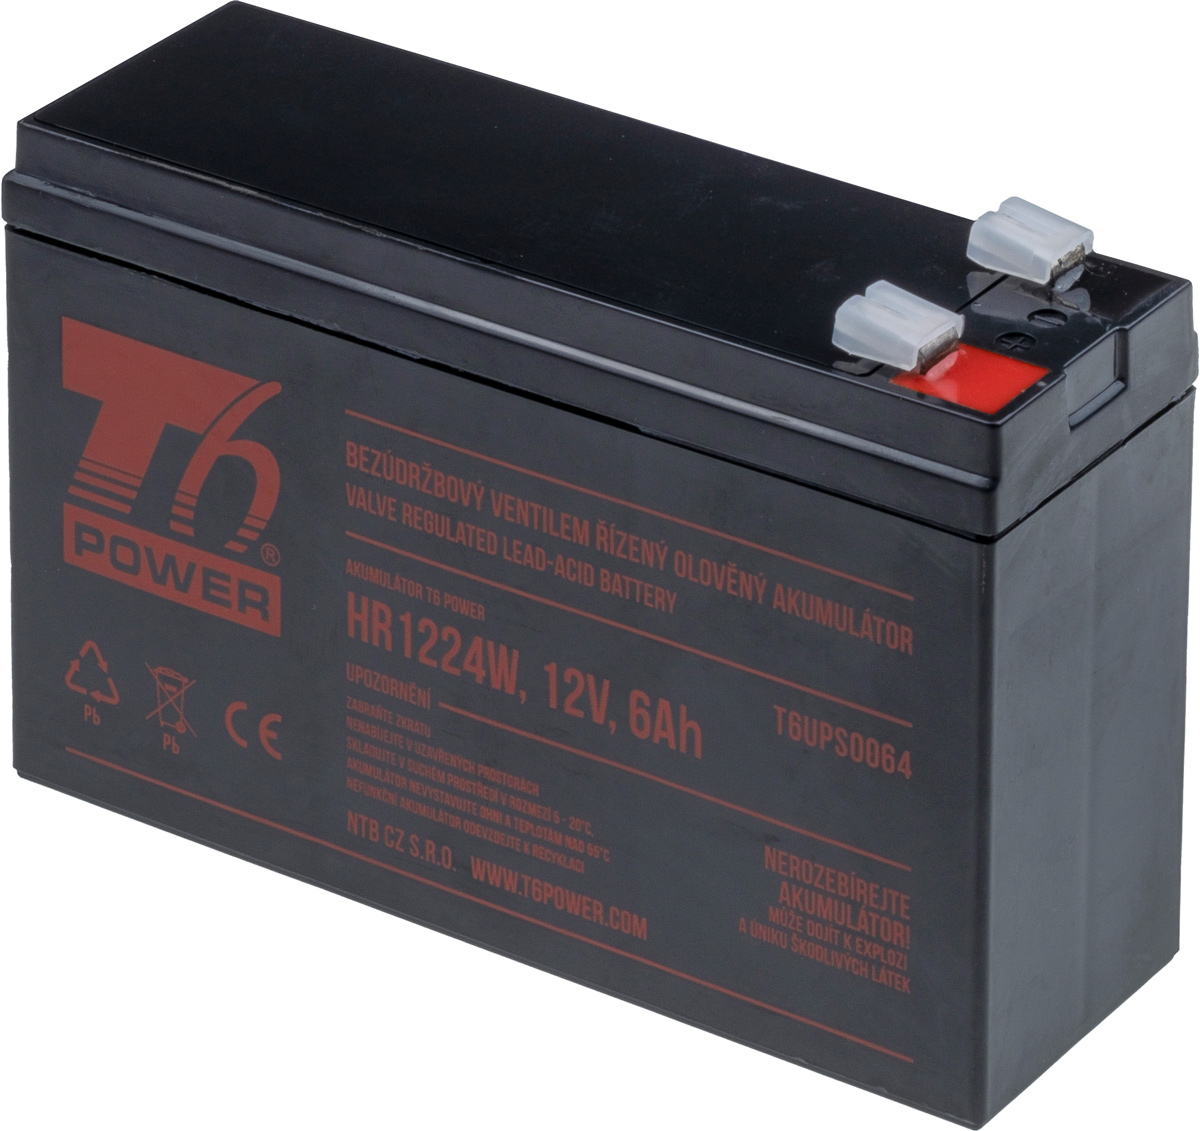 Obrázek T6 Power RBC114, RBC106 - battery KIT